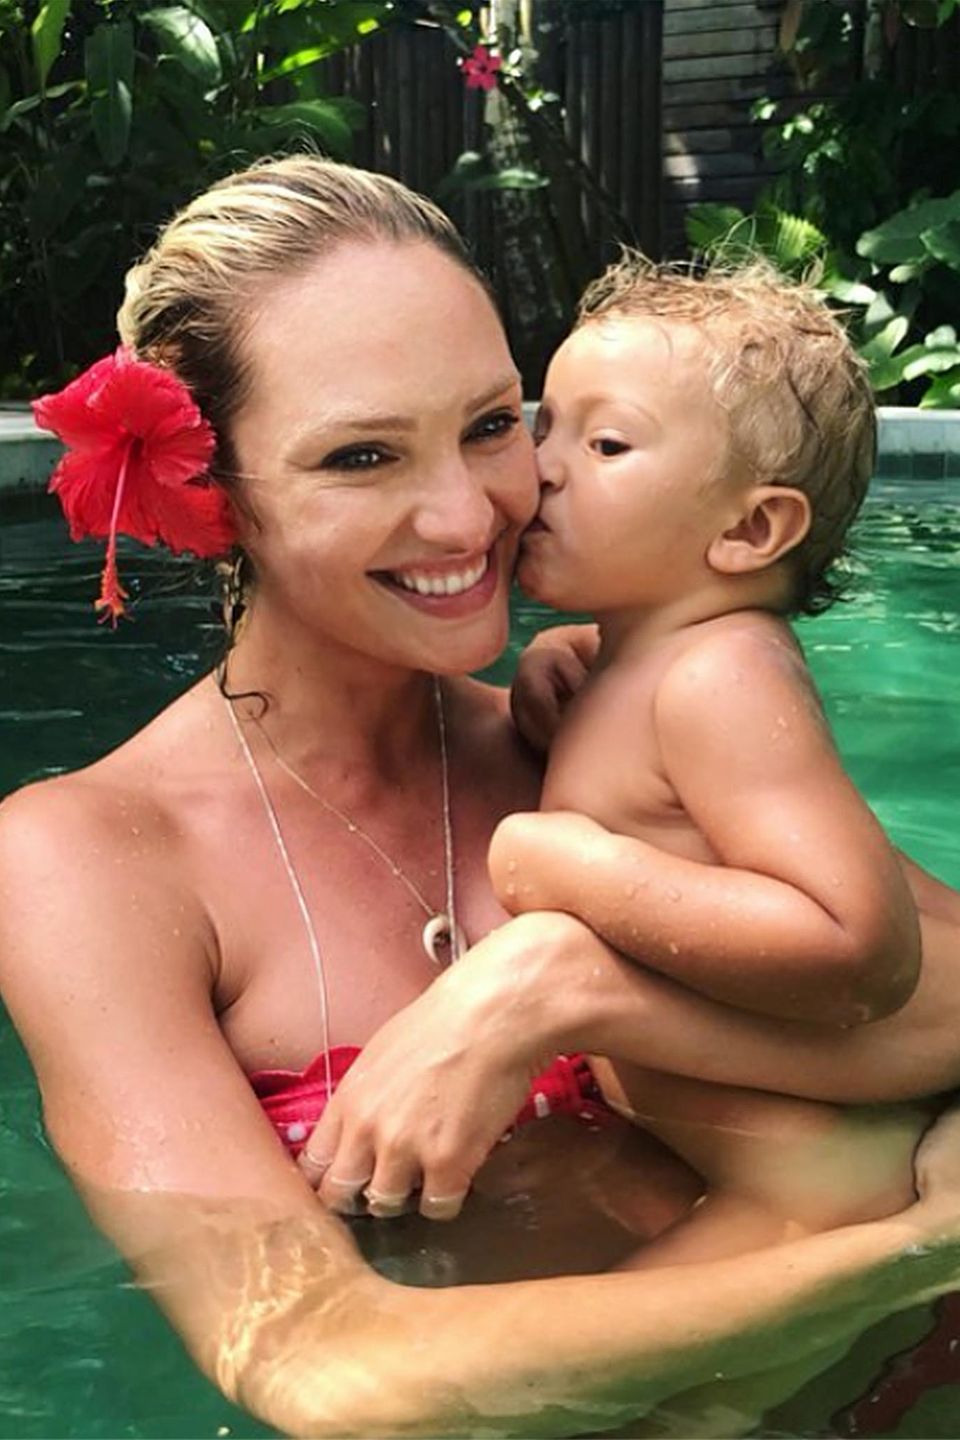 2. Januar 2018  So süß ist Candice Swanepoels erster Kuss von Sohnemann Anacã im neuen Jahr! Da freuen wir uns schon auf ihr nächstes Baby, das gerade im Topmodel-Bäuchlein heranwächst.